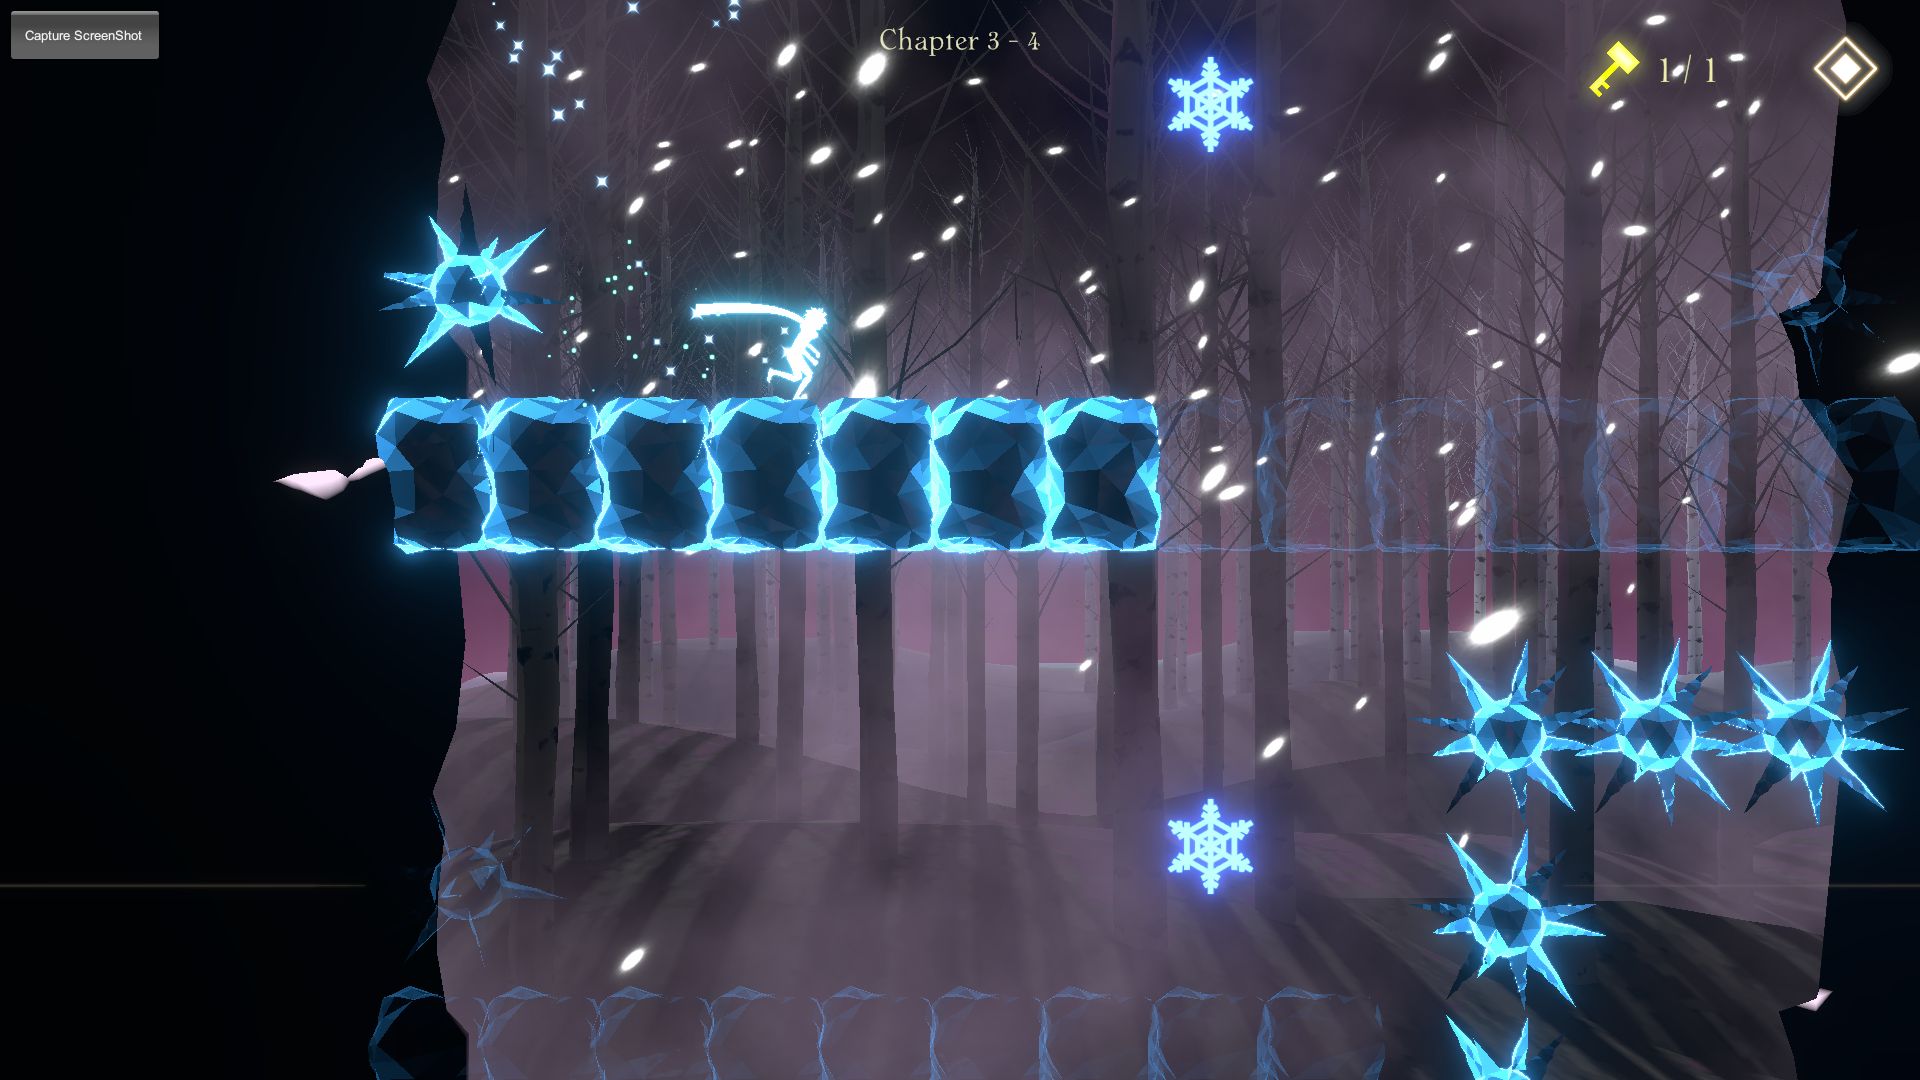 eia - Android game screenshots.